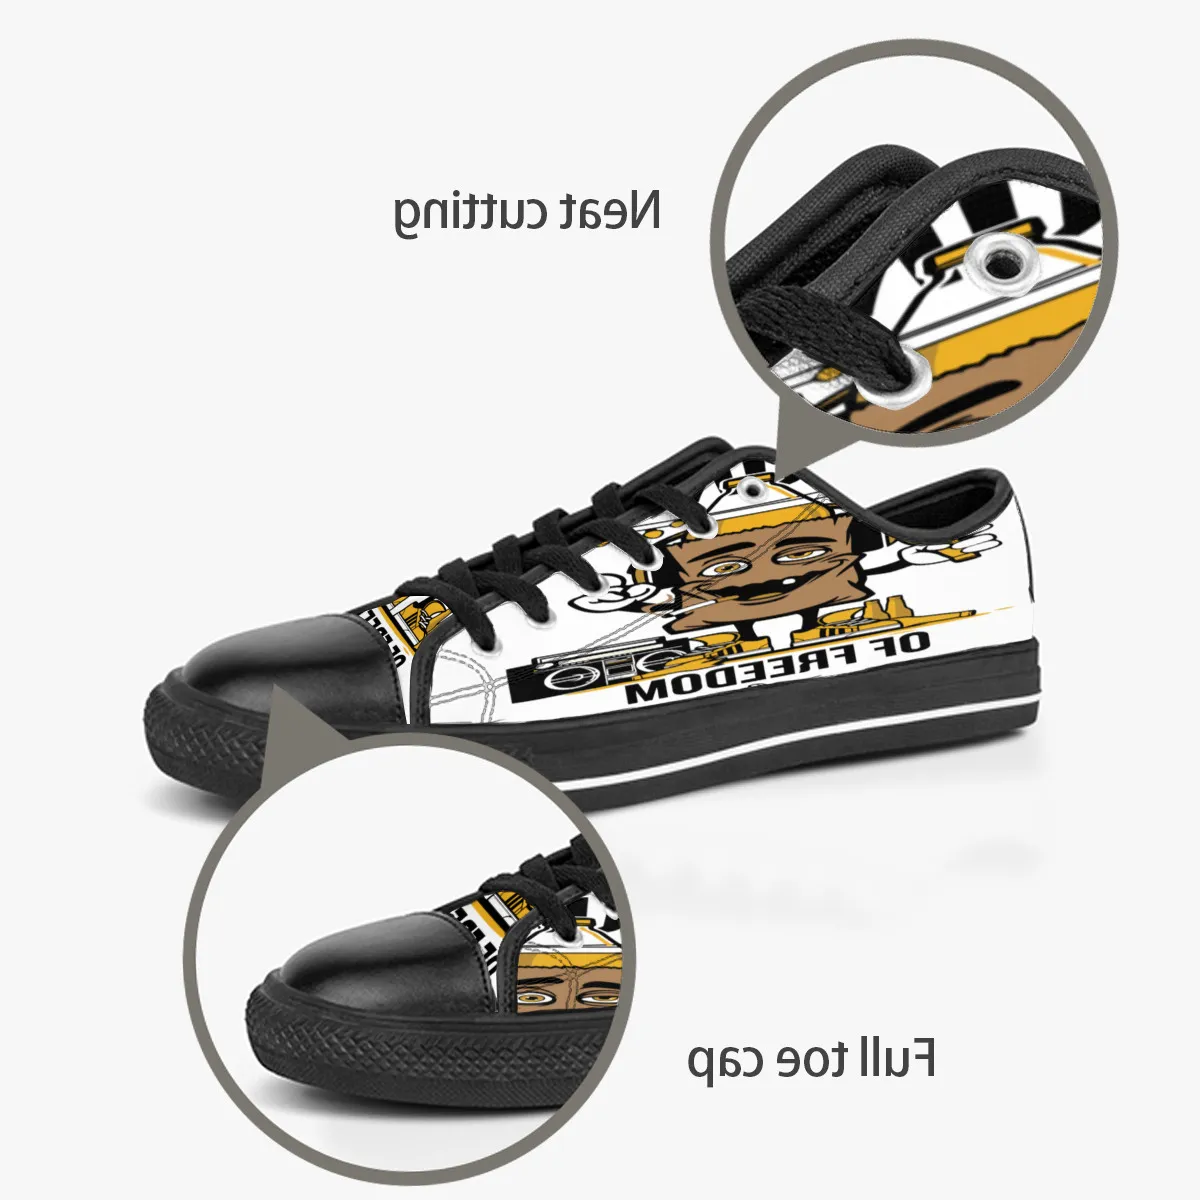 Hombres Mujeres DIY zapatos personalizados low top Canvas Skateboard sneakers triple negro personalización UV impresión deportes zapatillas shizi 171-3